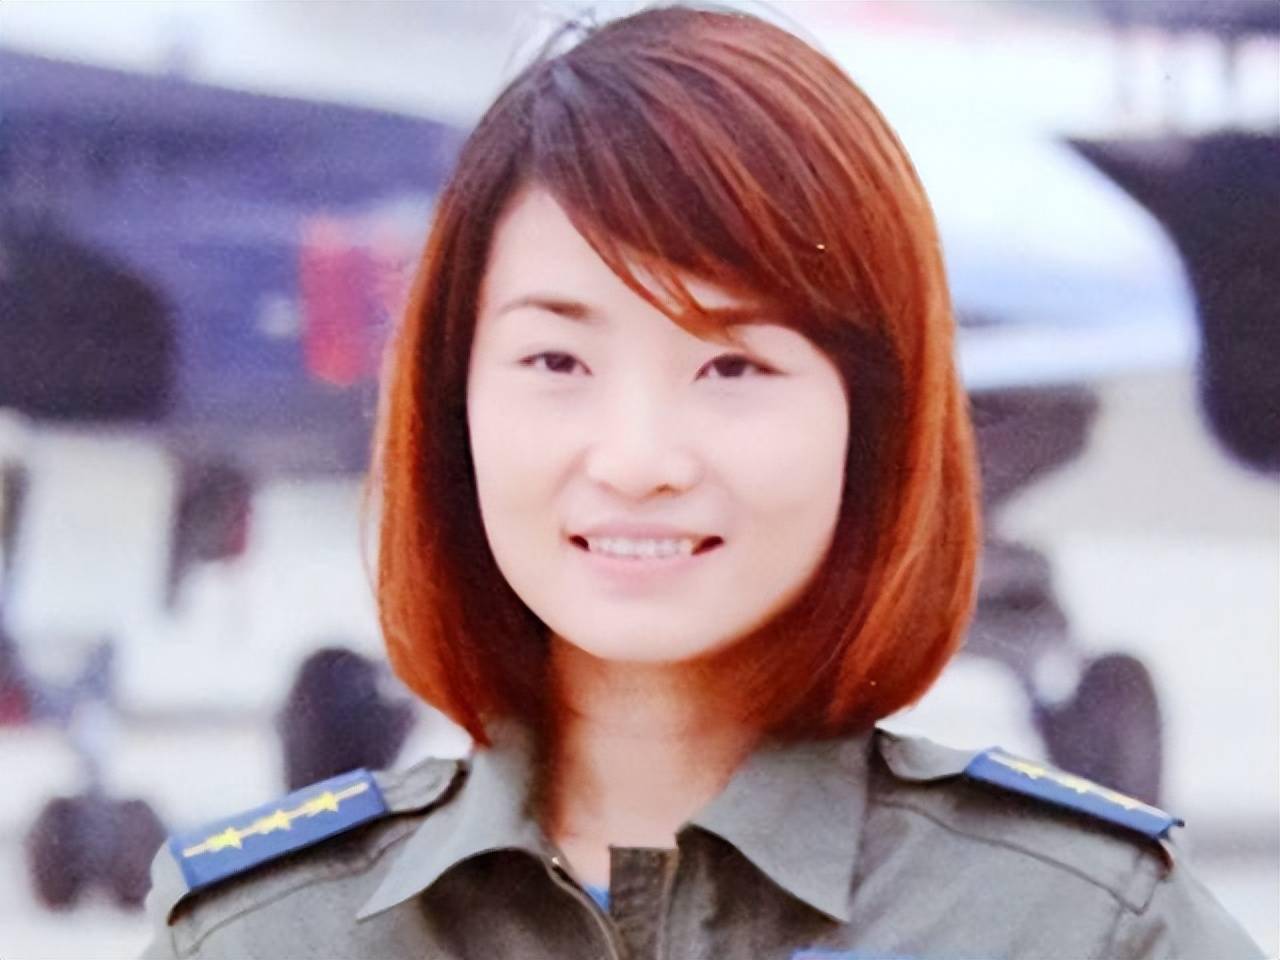 30岁牺牲的烈士余旭，全国首批战斗机女飞行员，首位歼10女飞行员 - 知乎